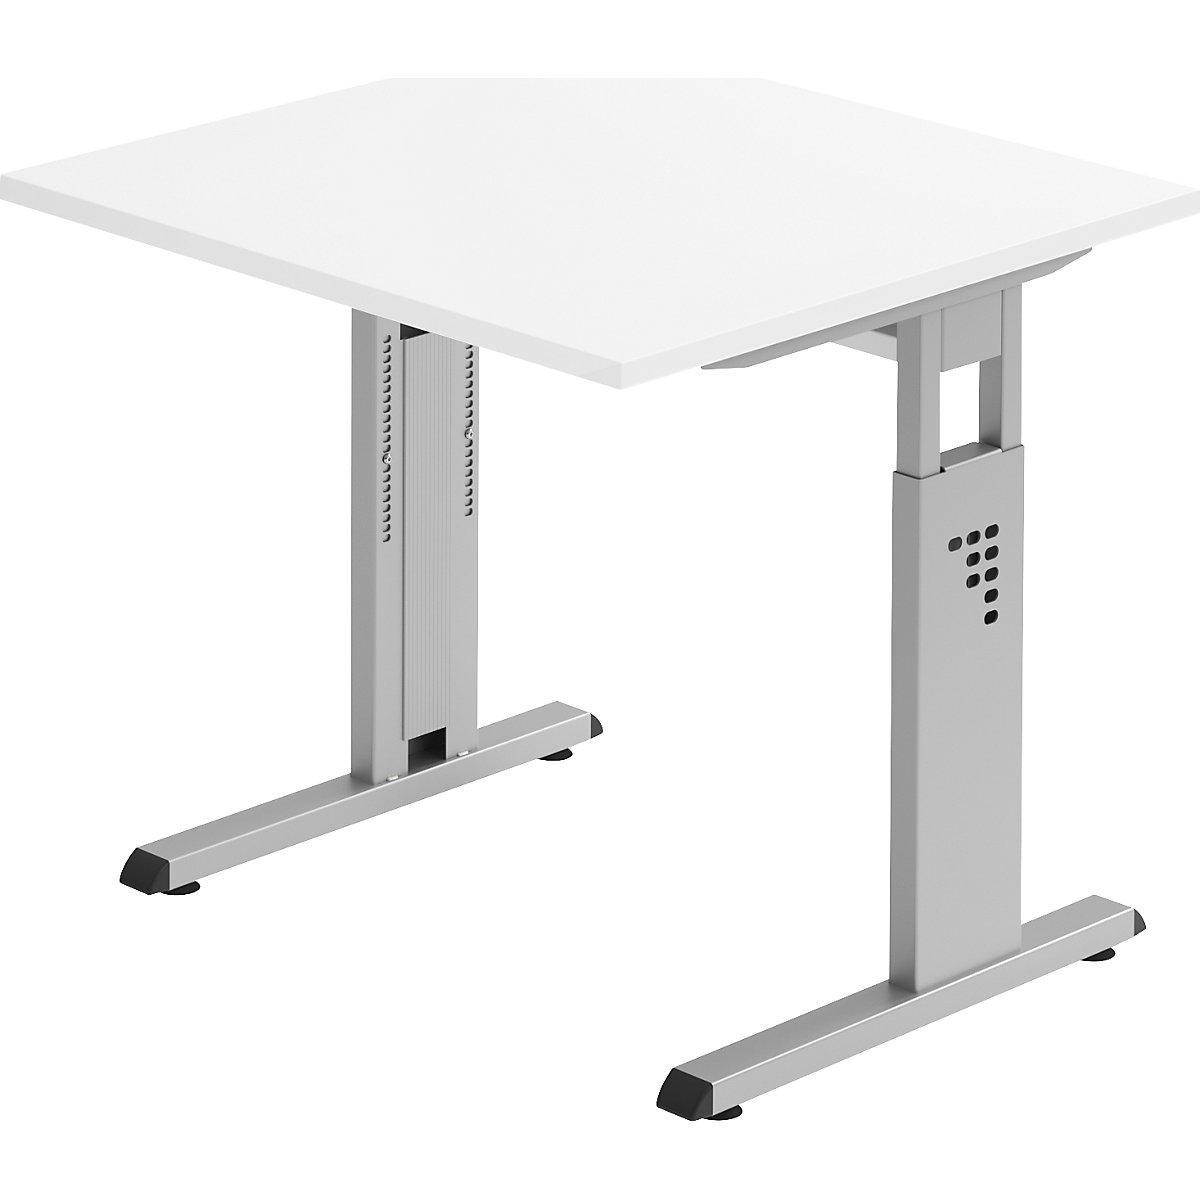 FINO Pisaći stol s postoljem u obliku slova C, namještanje visine u rasponu od 680 – 760 mm, ŠxD 800 x 800 mm, u bijeloj boji